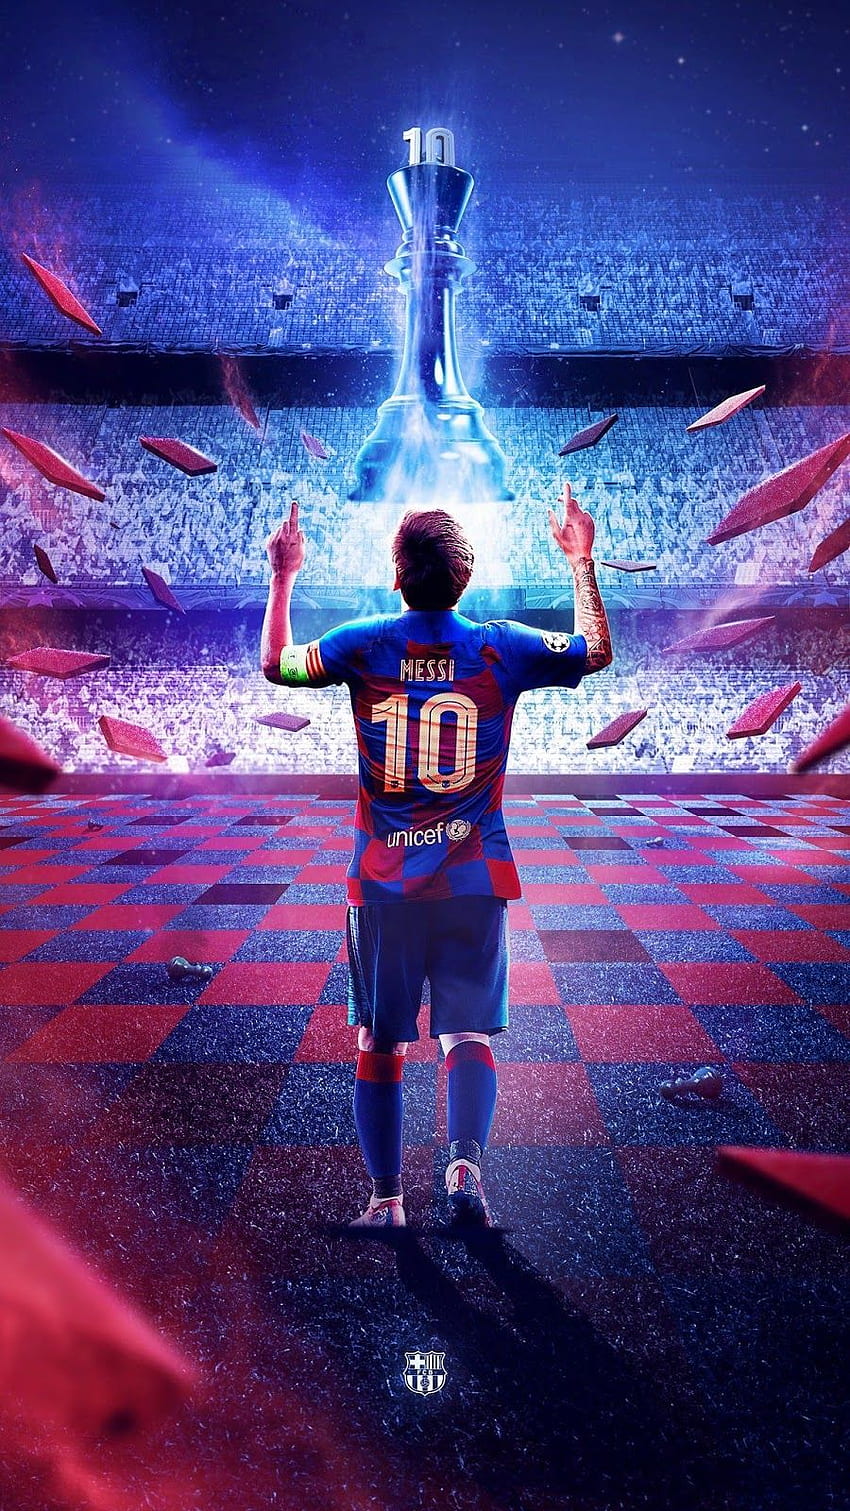 Nếu bạn đang sử dụng điện thoại iPhone hoặc Android và muốn trang trí nó với những hình nền đẹp mắt, tôi muốn giới thiệu đến bạn bộ sưu tập hình nền điện thoại của Messi. Với những hình ảnh đầy phong cách và sự nổi tiếng của Messi, chắc chắn bạn sẽ không thể chối từ được.